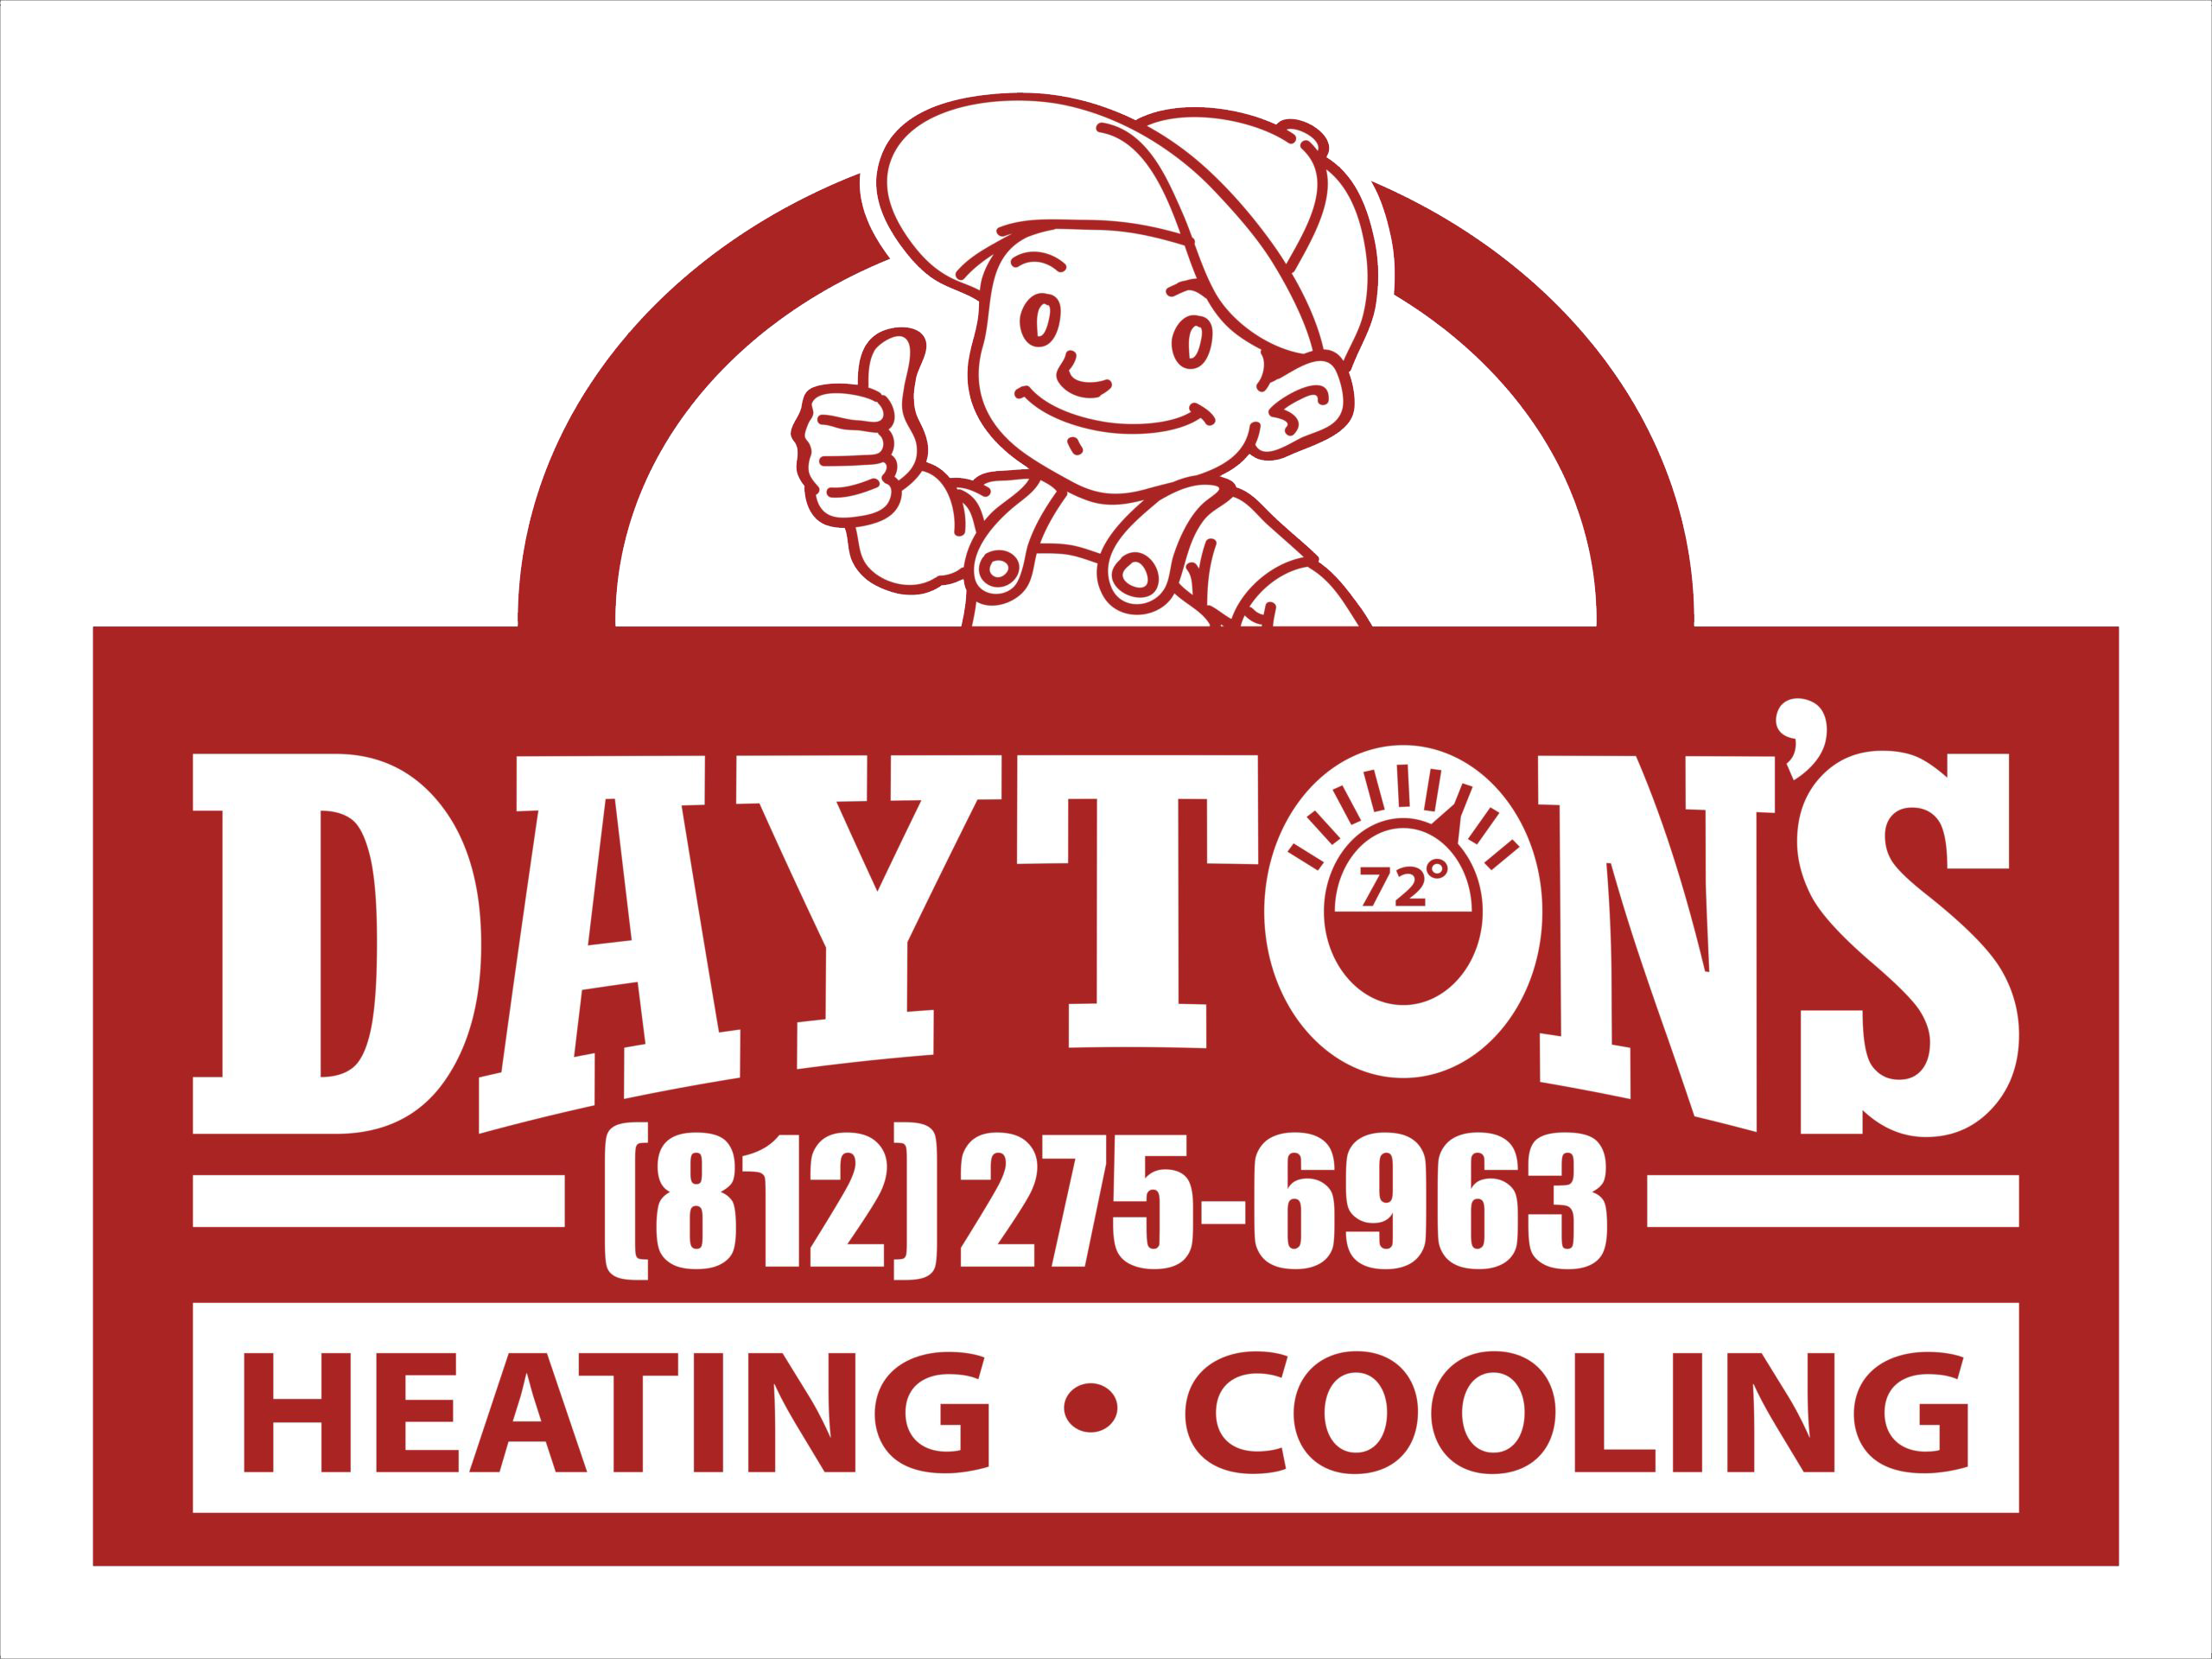 Dayton's Heating & Cooling LOGO